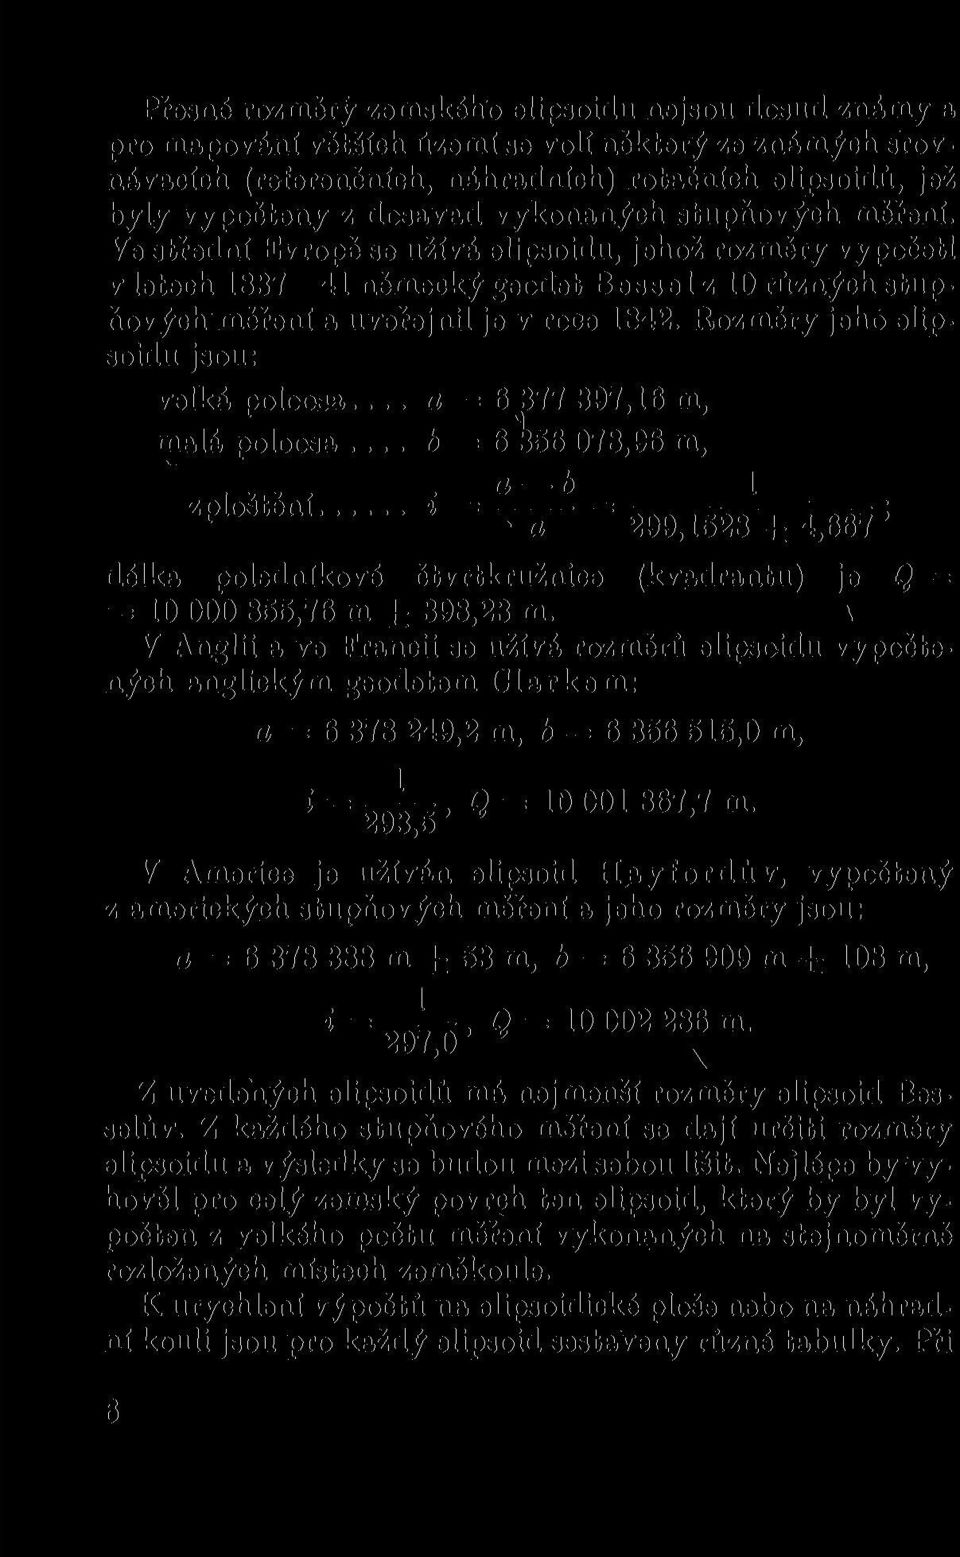 Rozměry jeho elipsoidu jsou: velká poloosa a = 6 377 397,16 m, malá poloosa b = 6 ^56 078,96 m, ZploStění = 299,1528± 4,667!